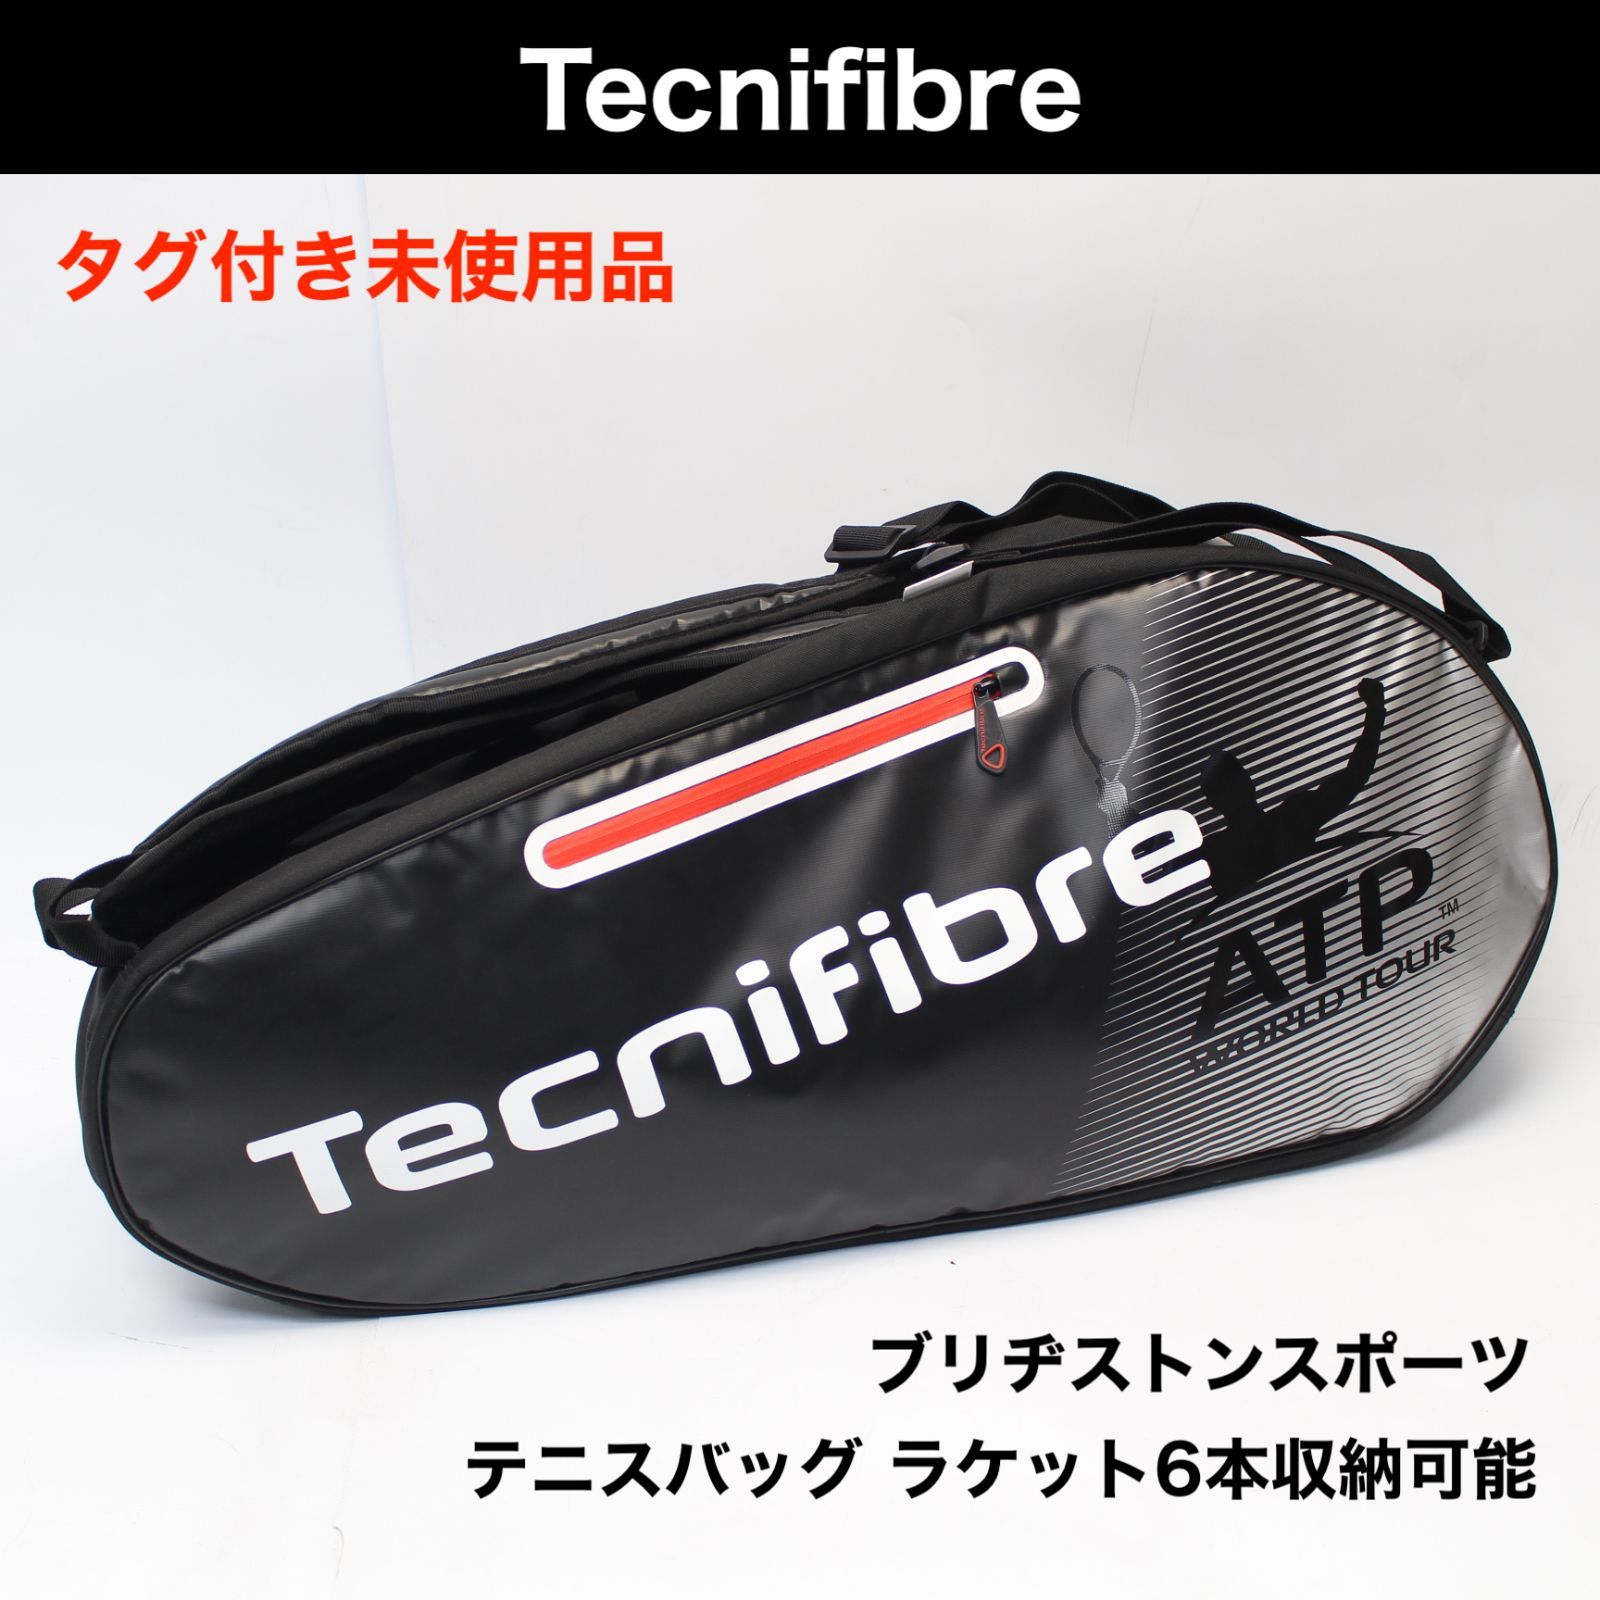 テクニファイバー Tecnifibre テニス ラケットバッグ 8本収納可能 ...